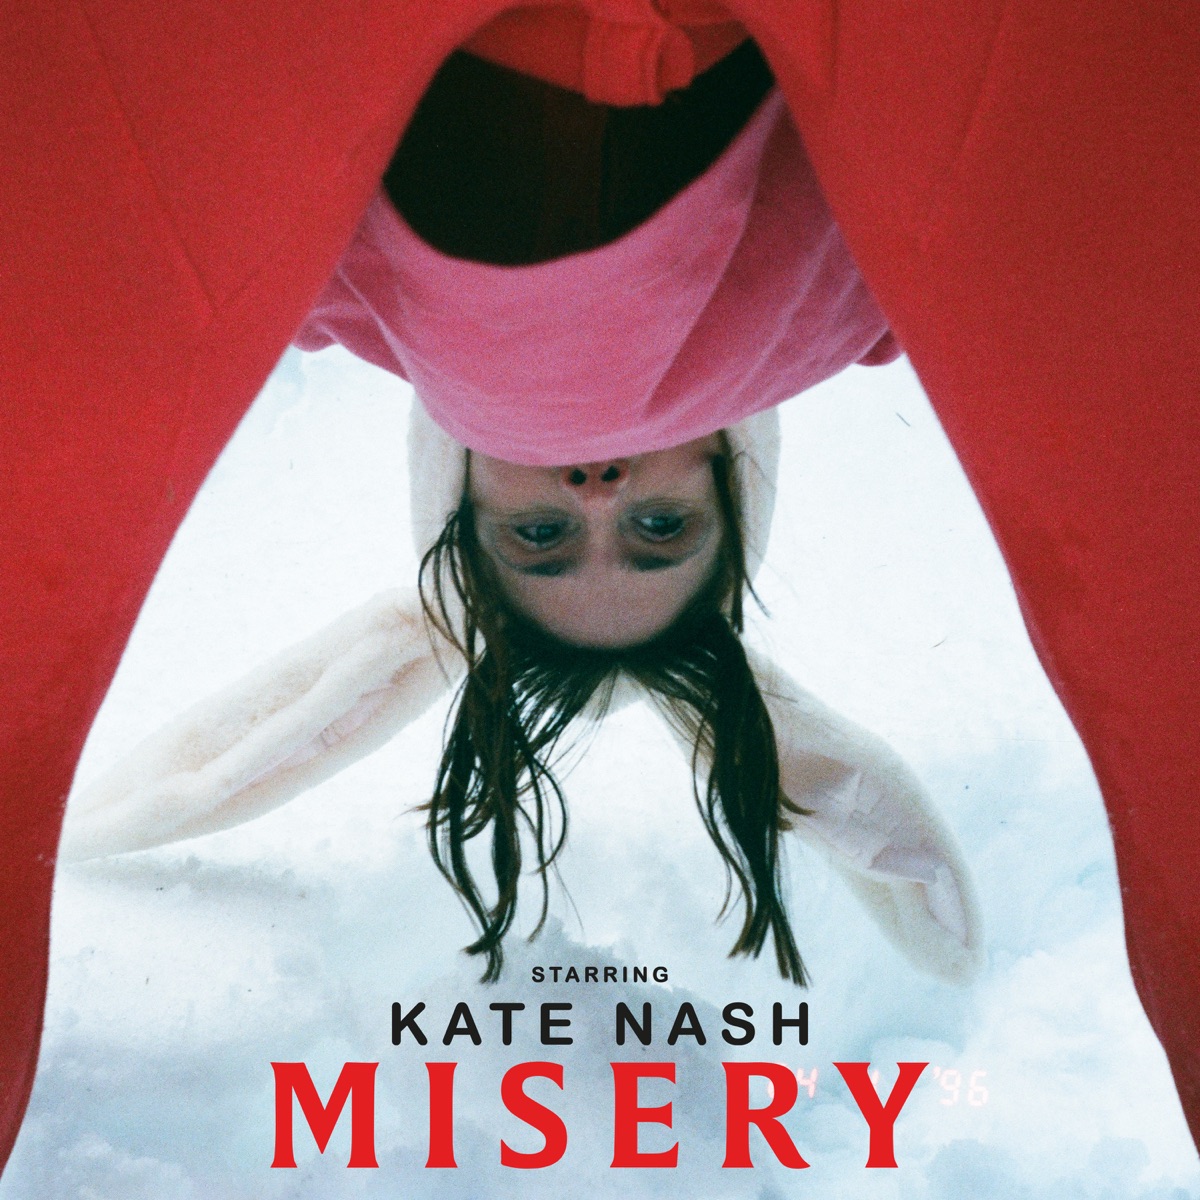 Kate Nash Misery cover artwork